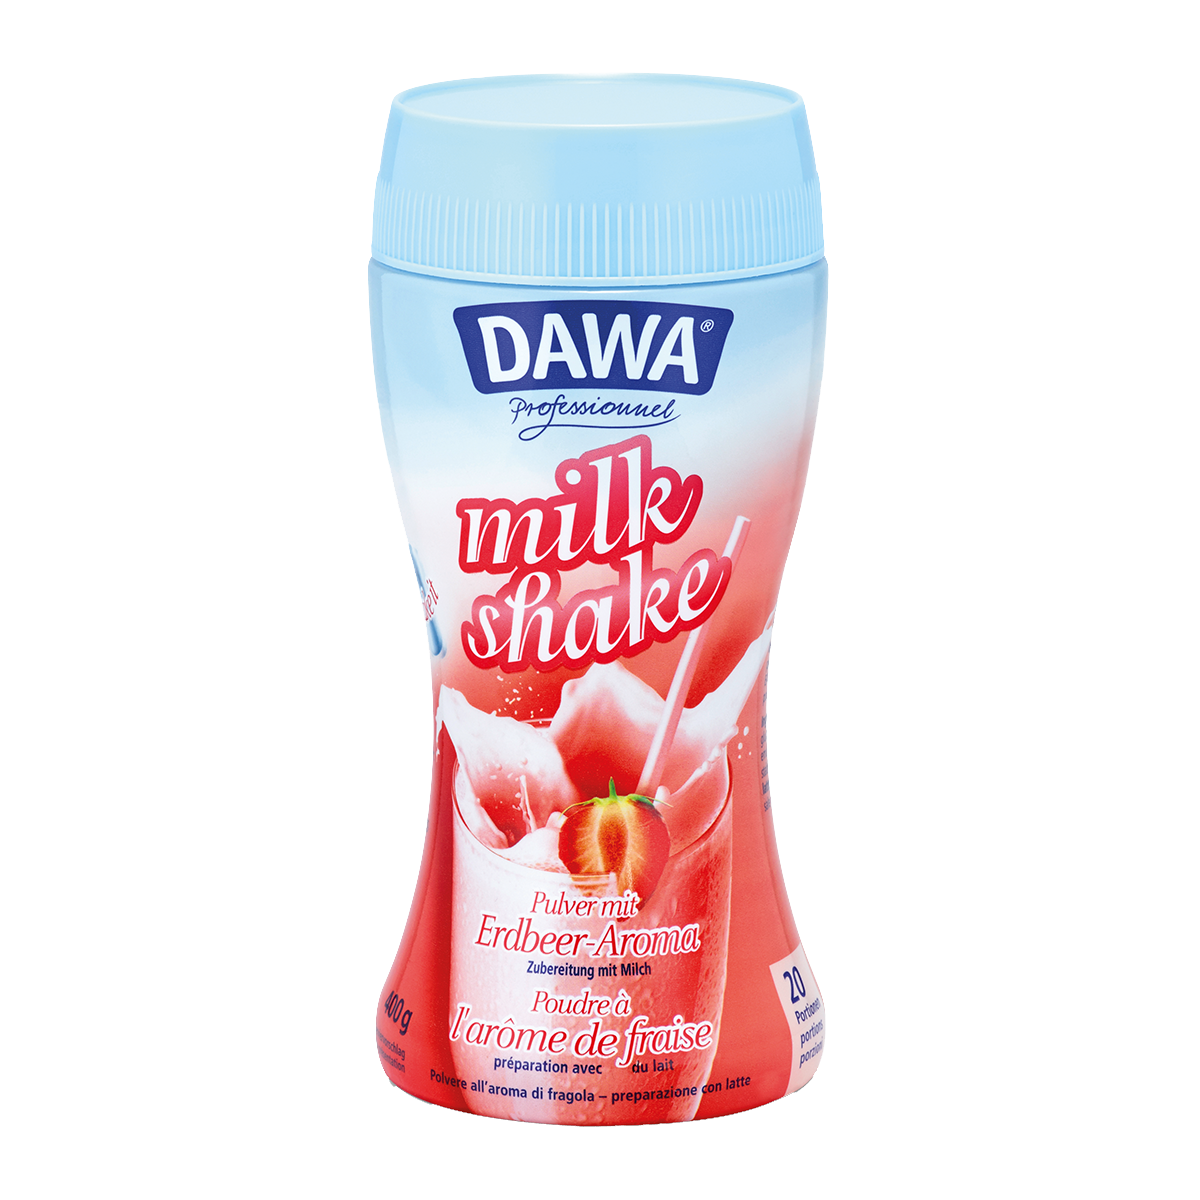  Dawa Milk Shake Erdbeere